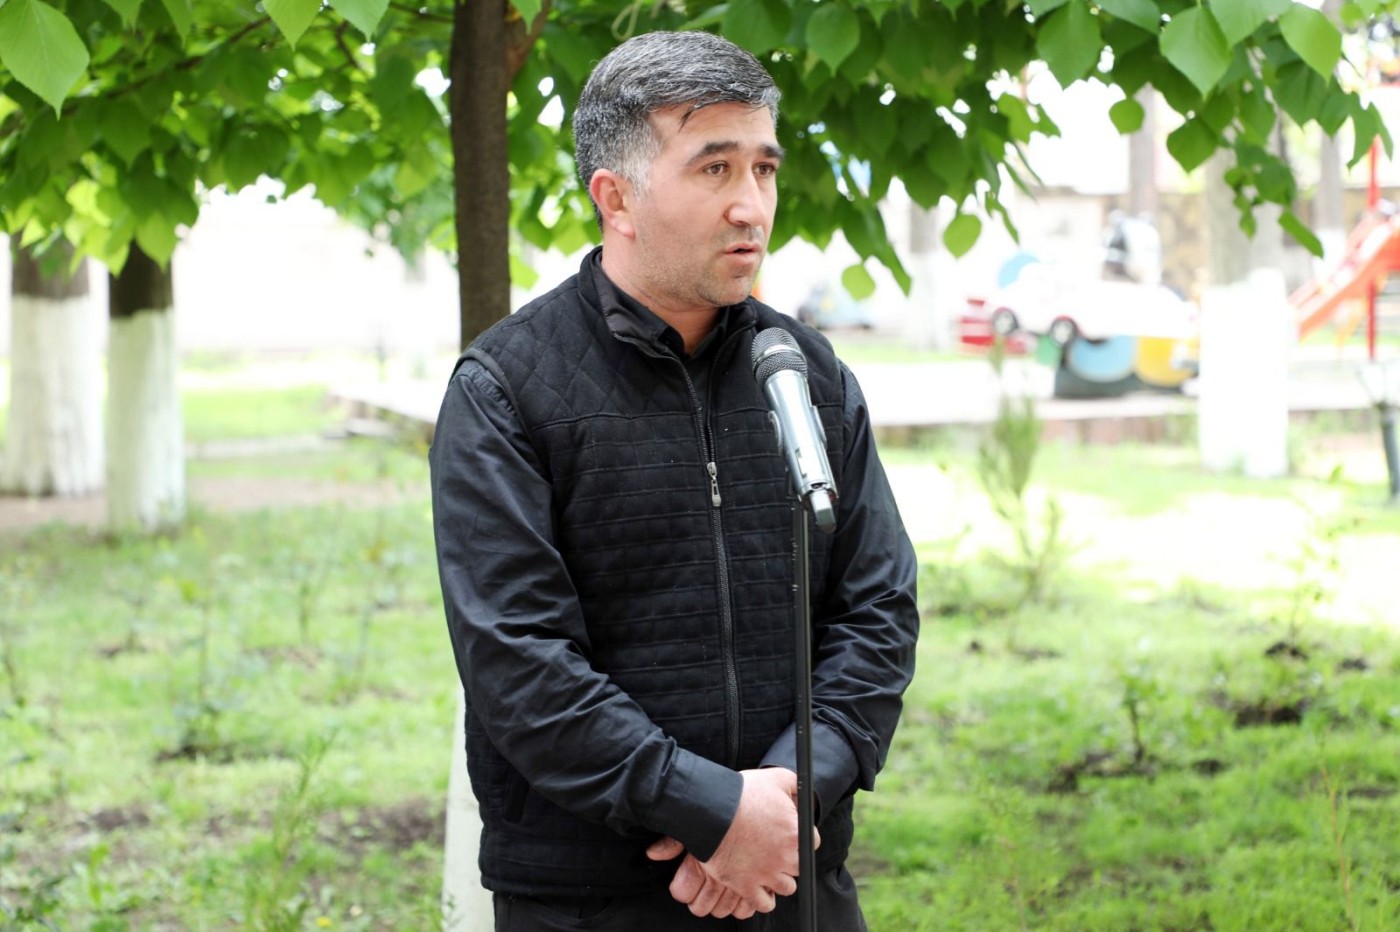 20-yə yaxın Tovuz sakini "Açıq mikrofon"un imkanlarından yararlandı  - FOTOLAR